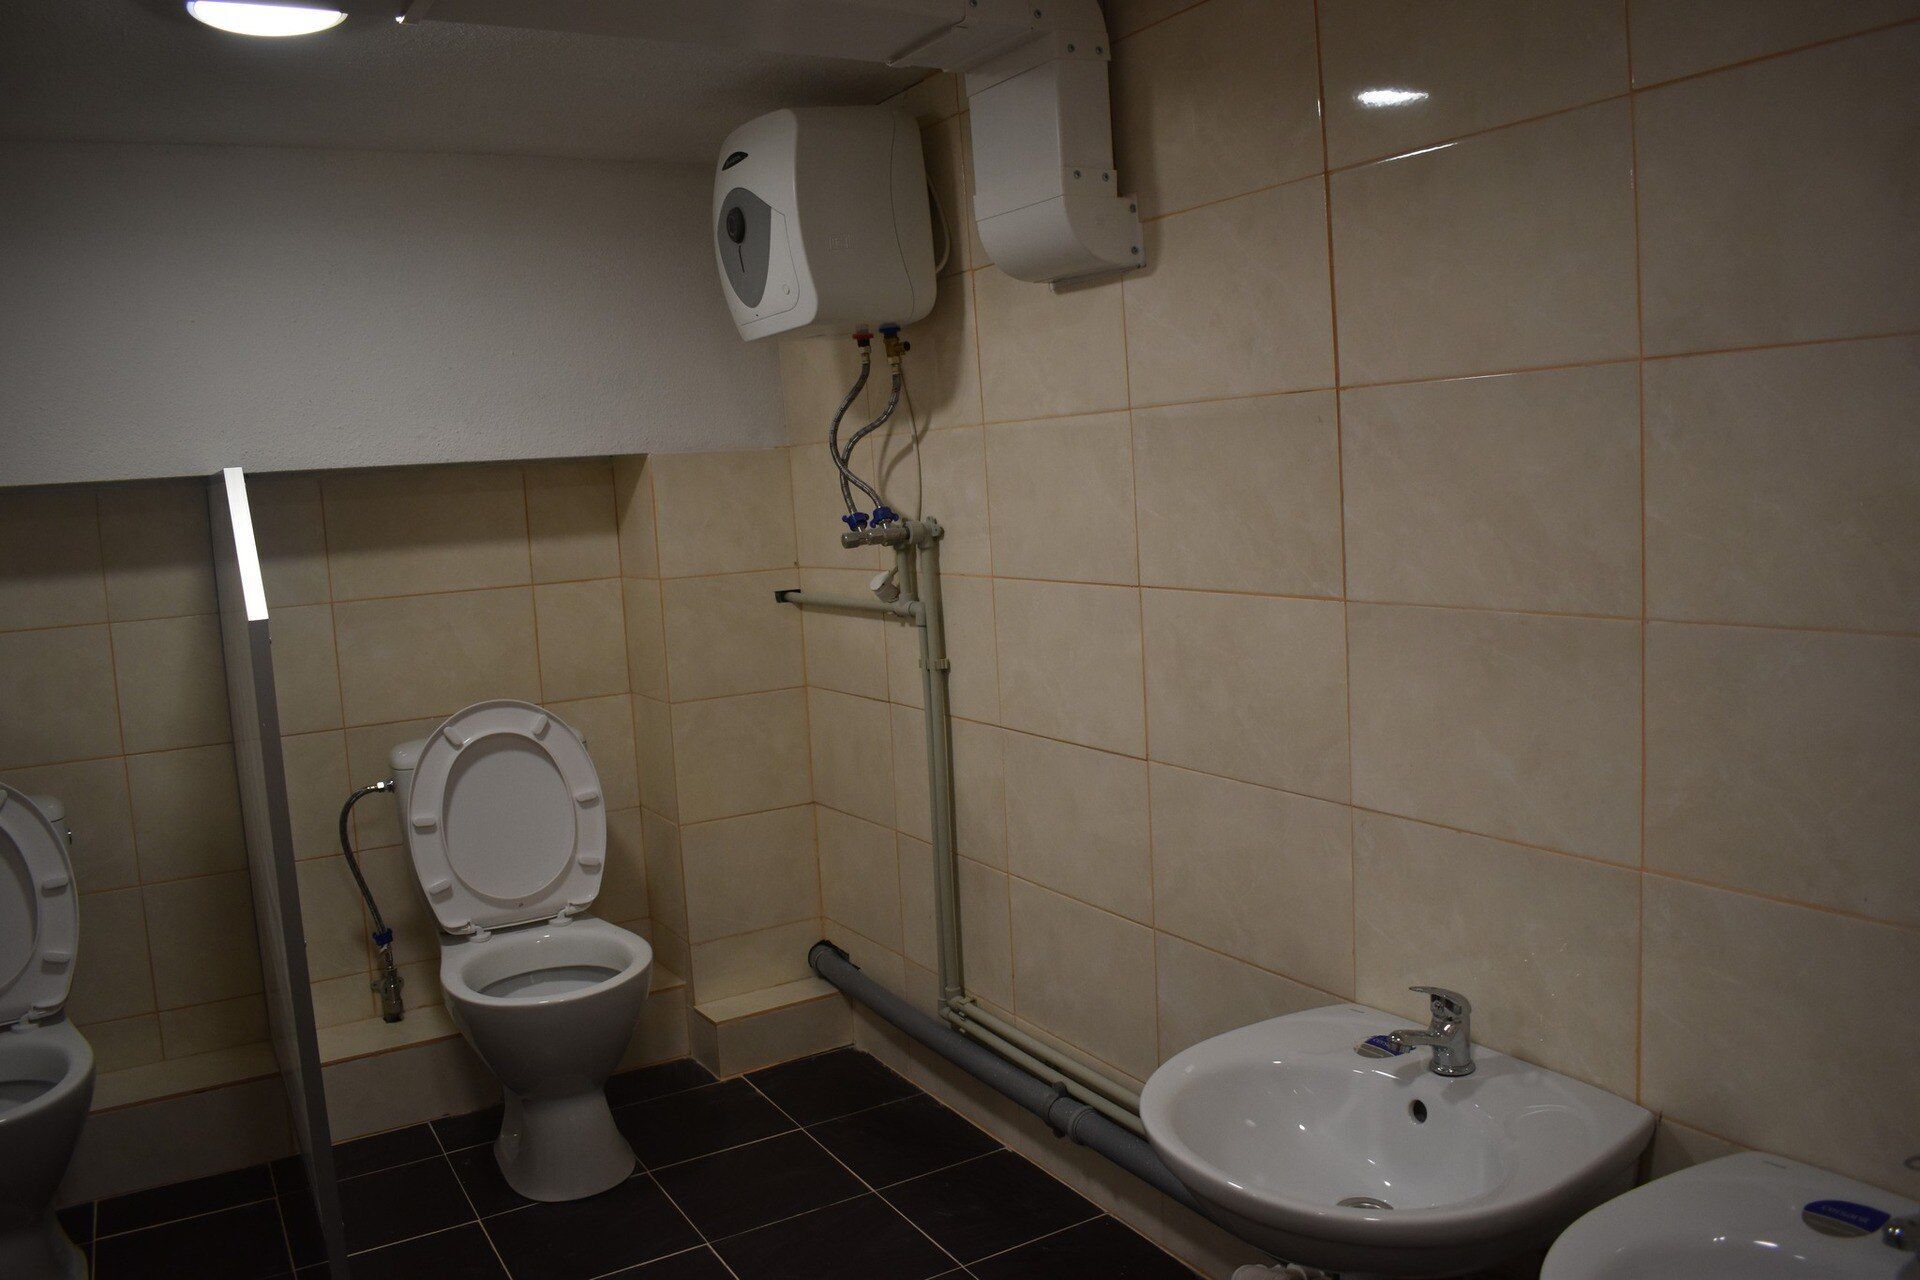 На Київщині виник скандал через туалет в укритті дитячого садка. Фото